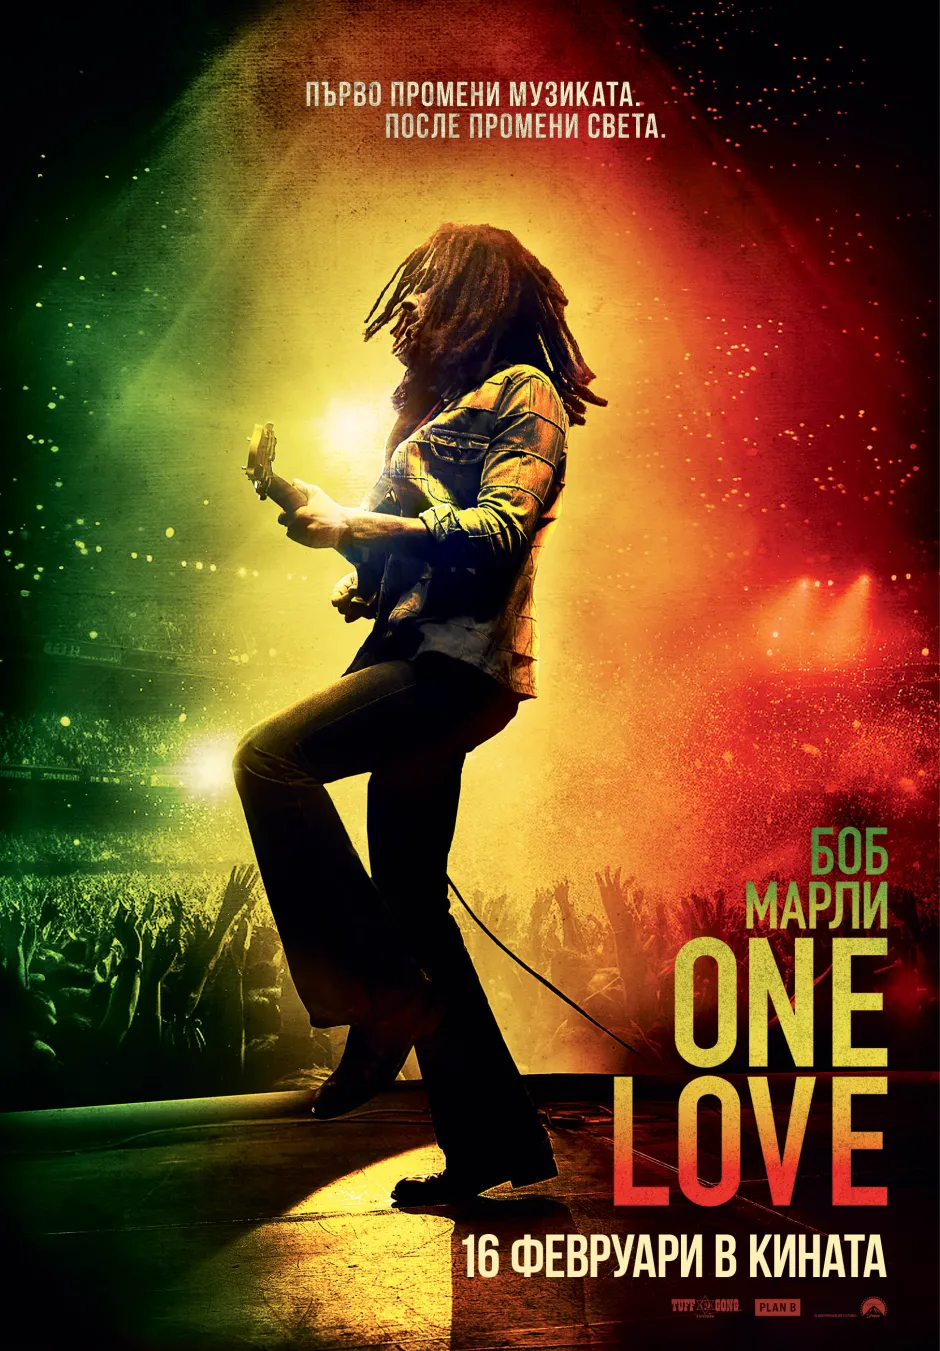 Посланията за любов, мир и единство - в центъра на игралния филм Боб Марли: One Love